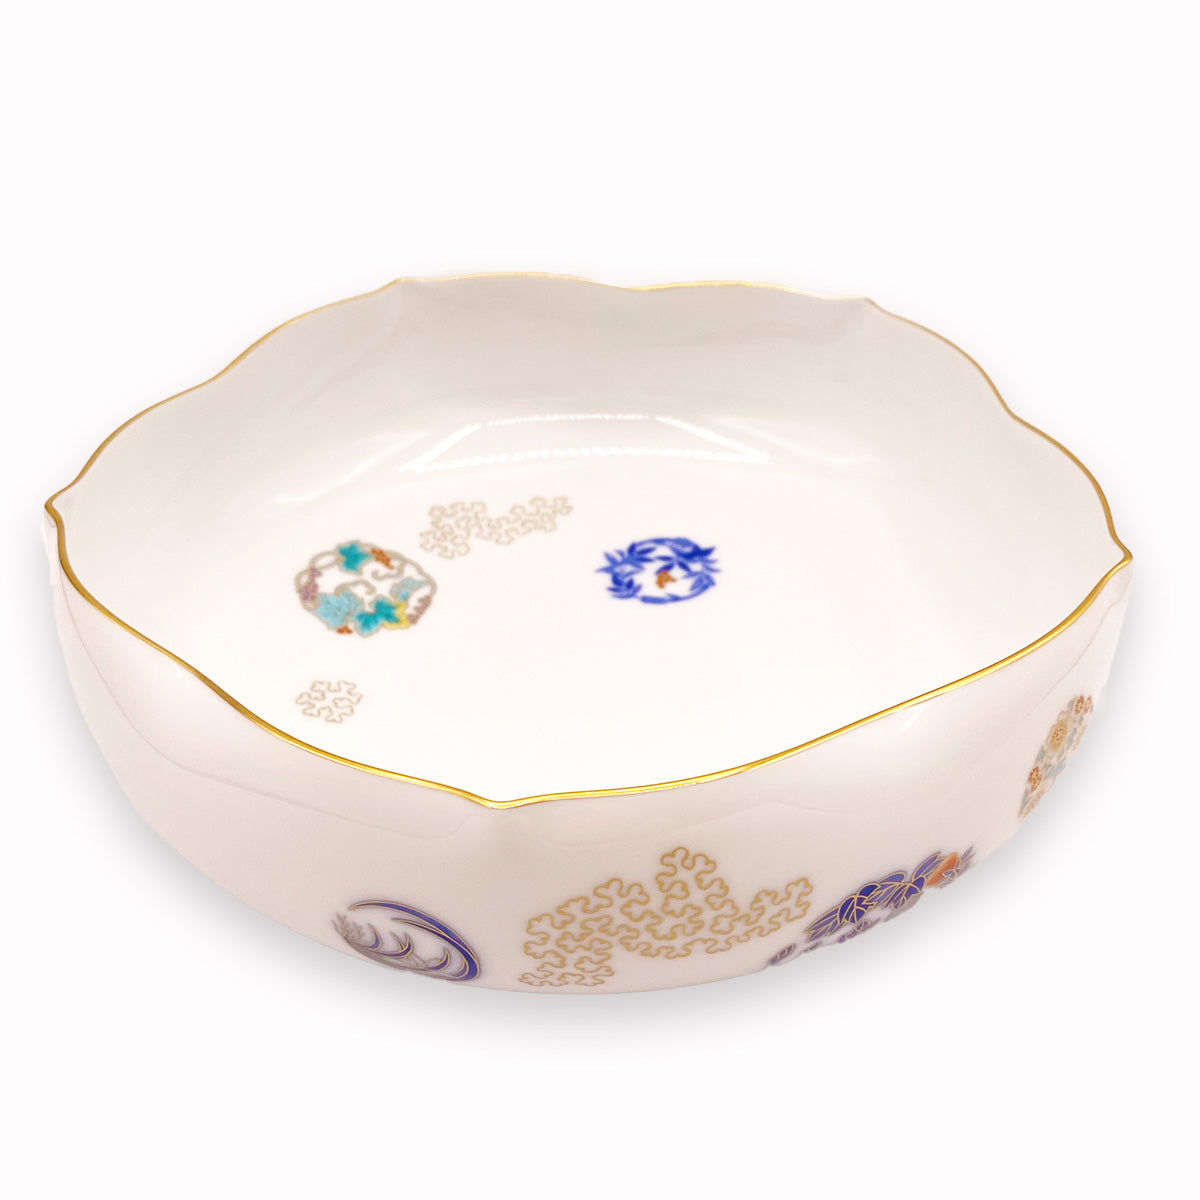 Koransha Porcelain Vessel | Arita Ware